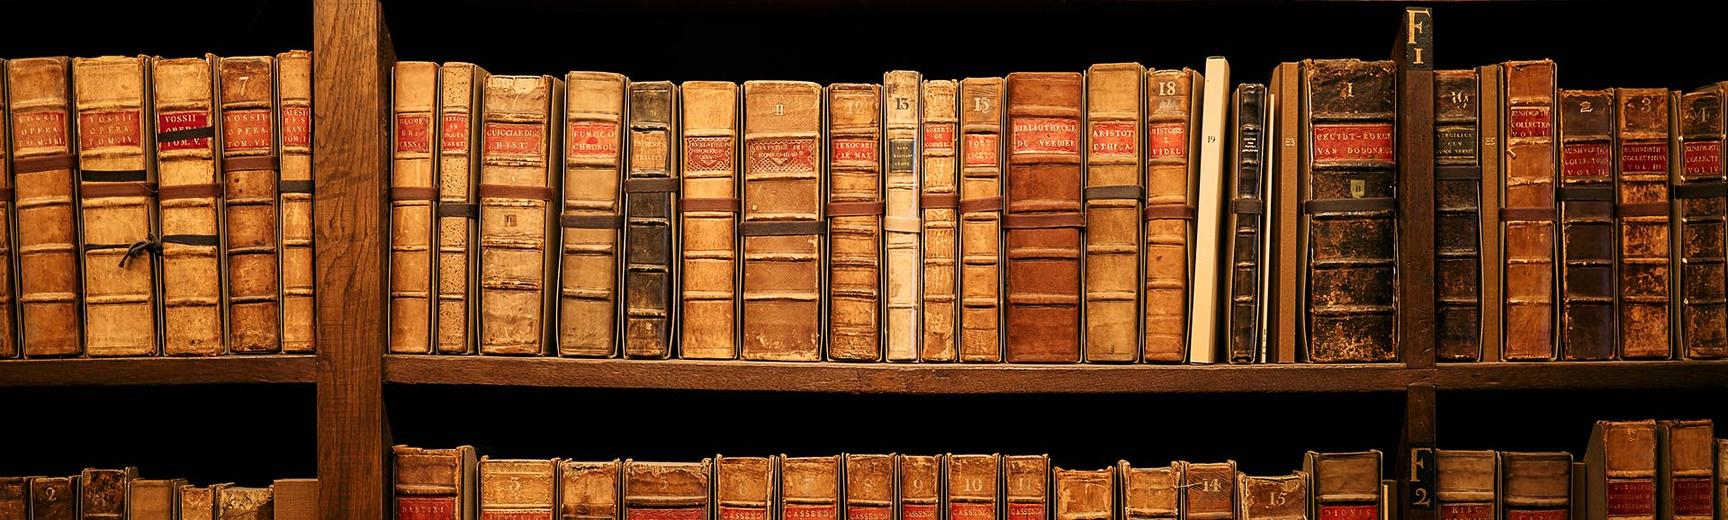 Shelves of old books on wooden bookshelves